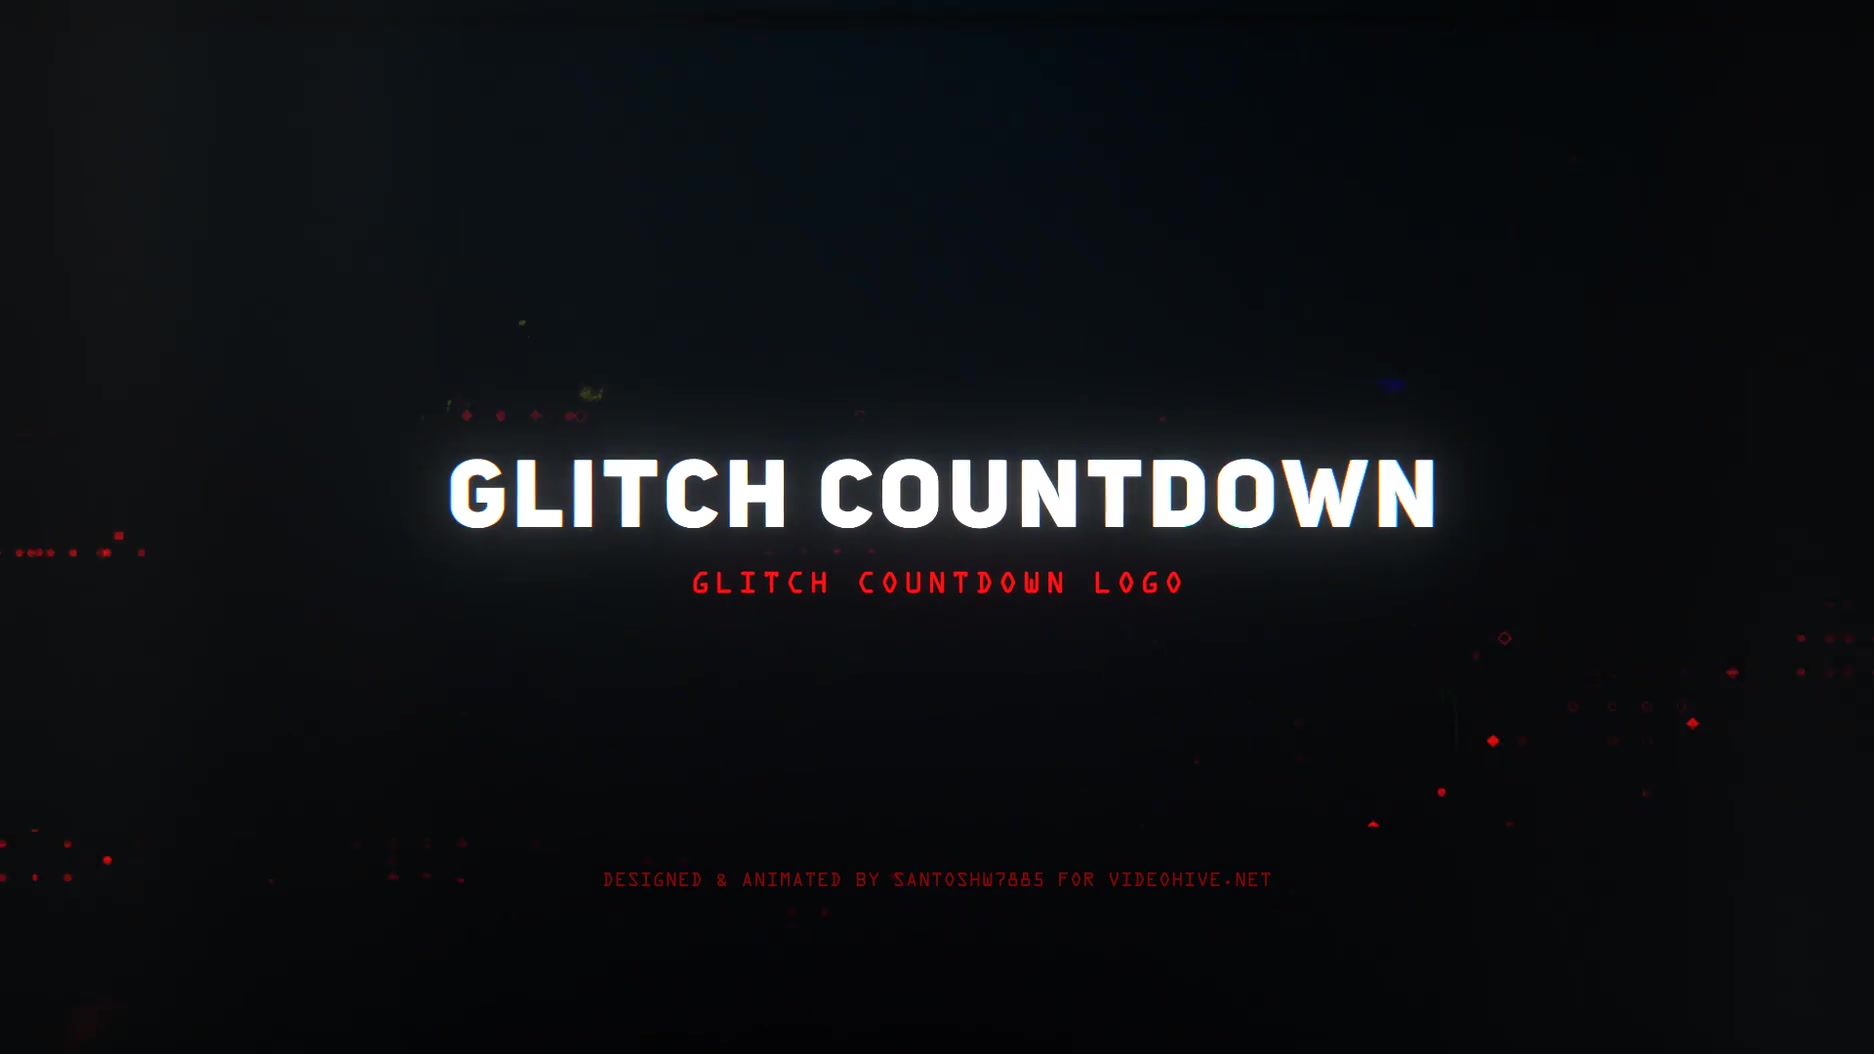 Glitch Countdown Intro Mogrt Videohive 28789126 Premiere Pro Image 6